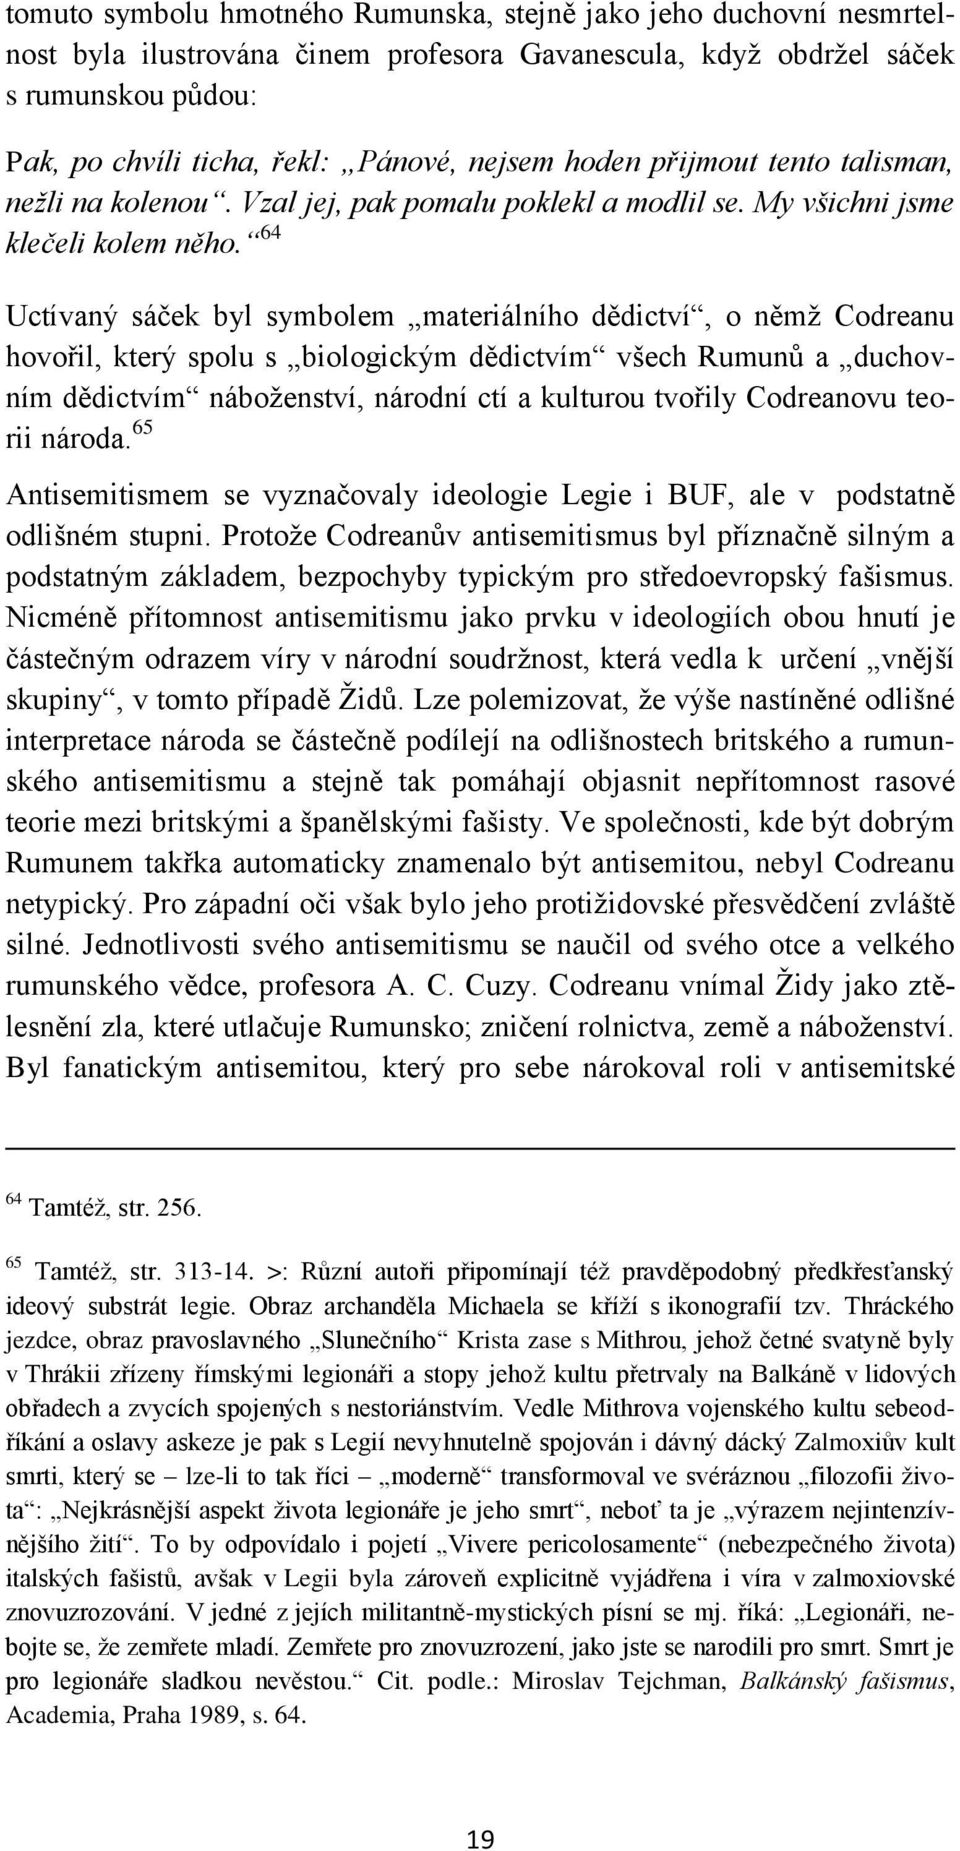 64 Uctívaný sáček byl symbolem materiálního dědictví, o němţ Codreanu hovořil, který spolu s biologickým dědictvím všech Rumunů a duchovním dědictvím náboţenství, národní ctí a kulturou tvořily